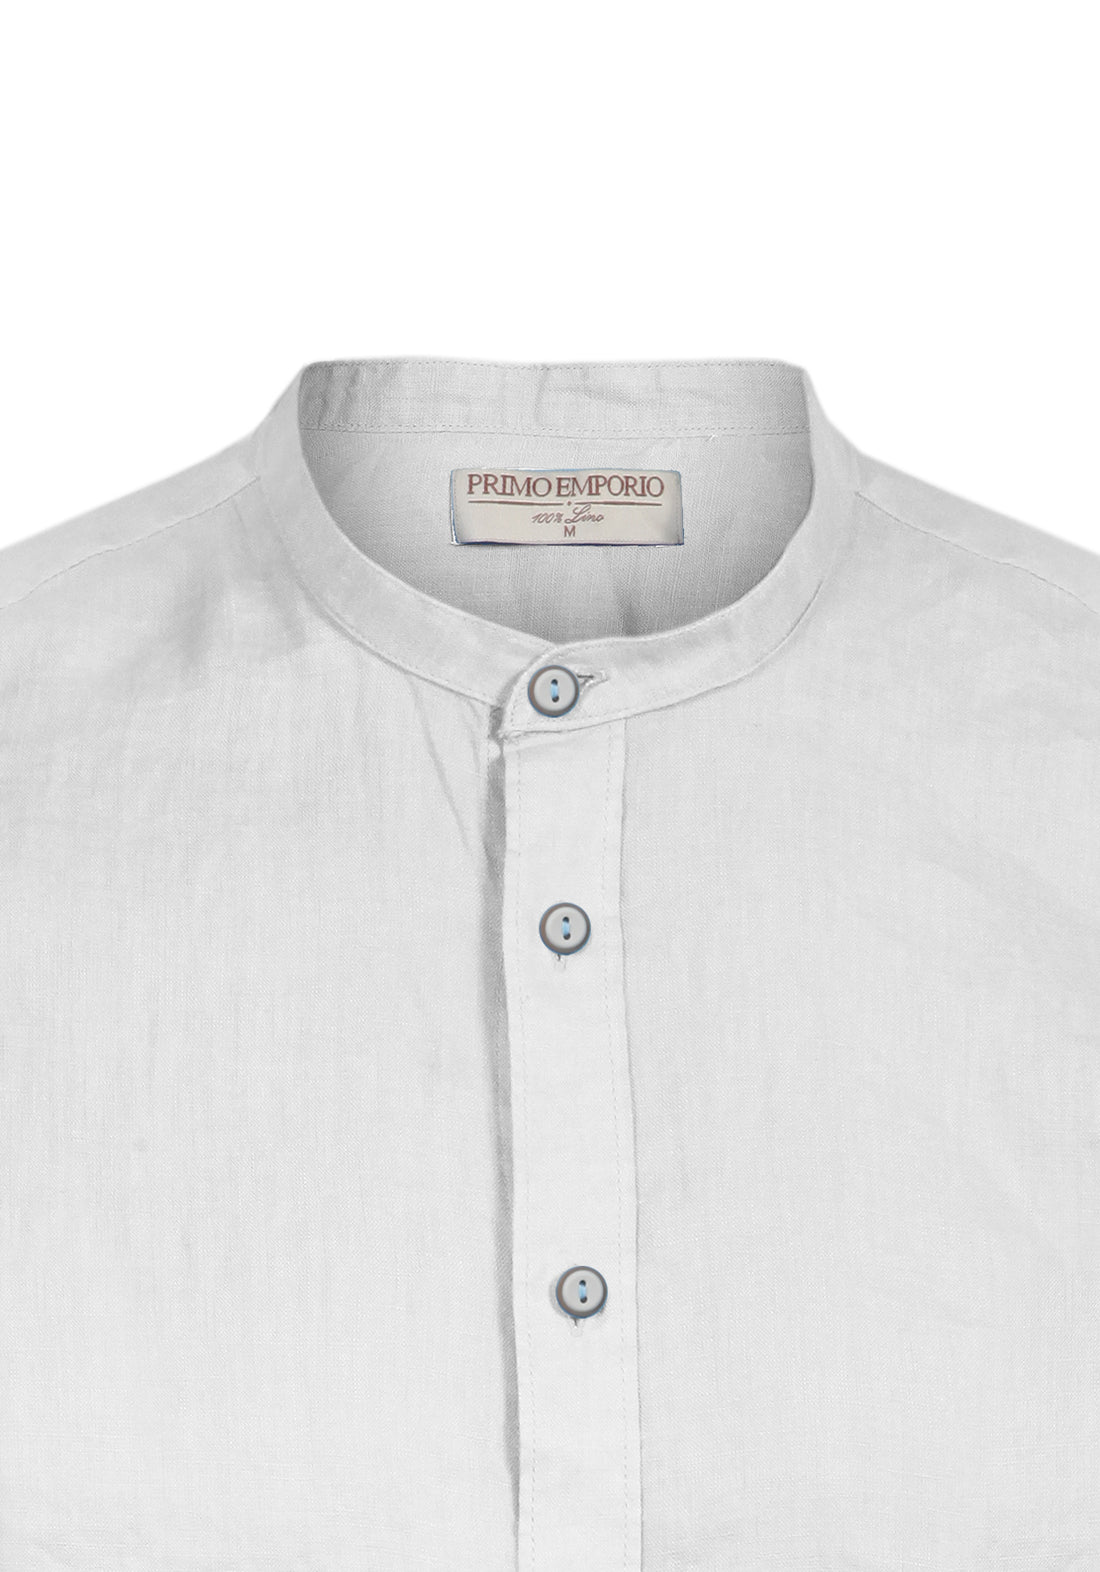 Half Sleeve Korean Linen Shirt - White